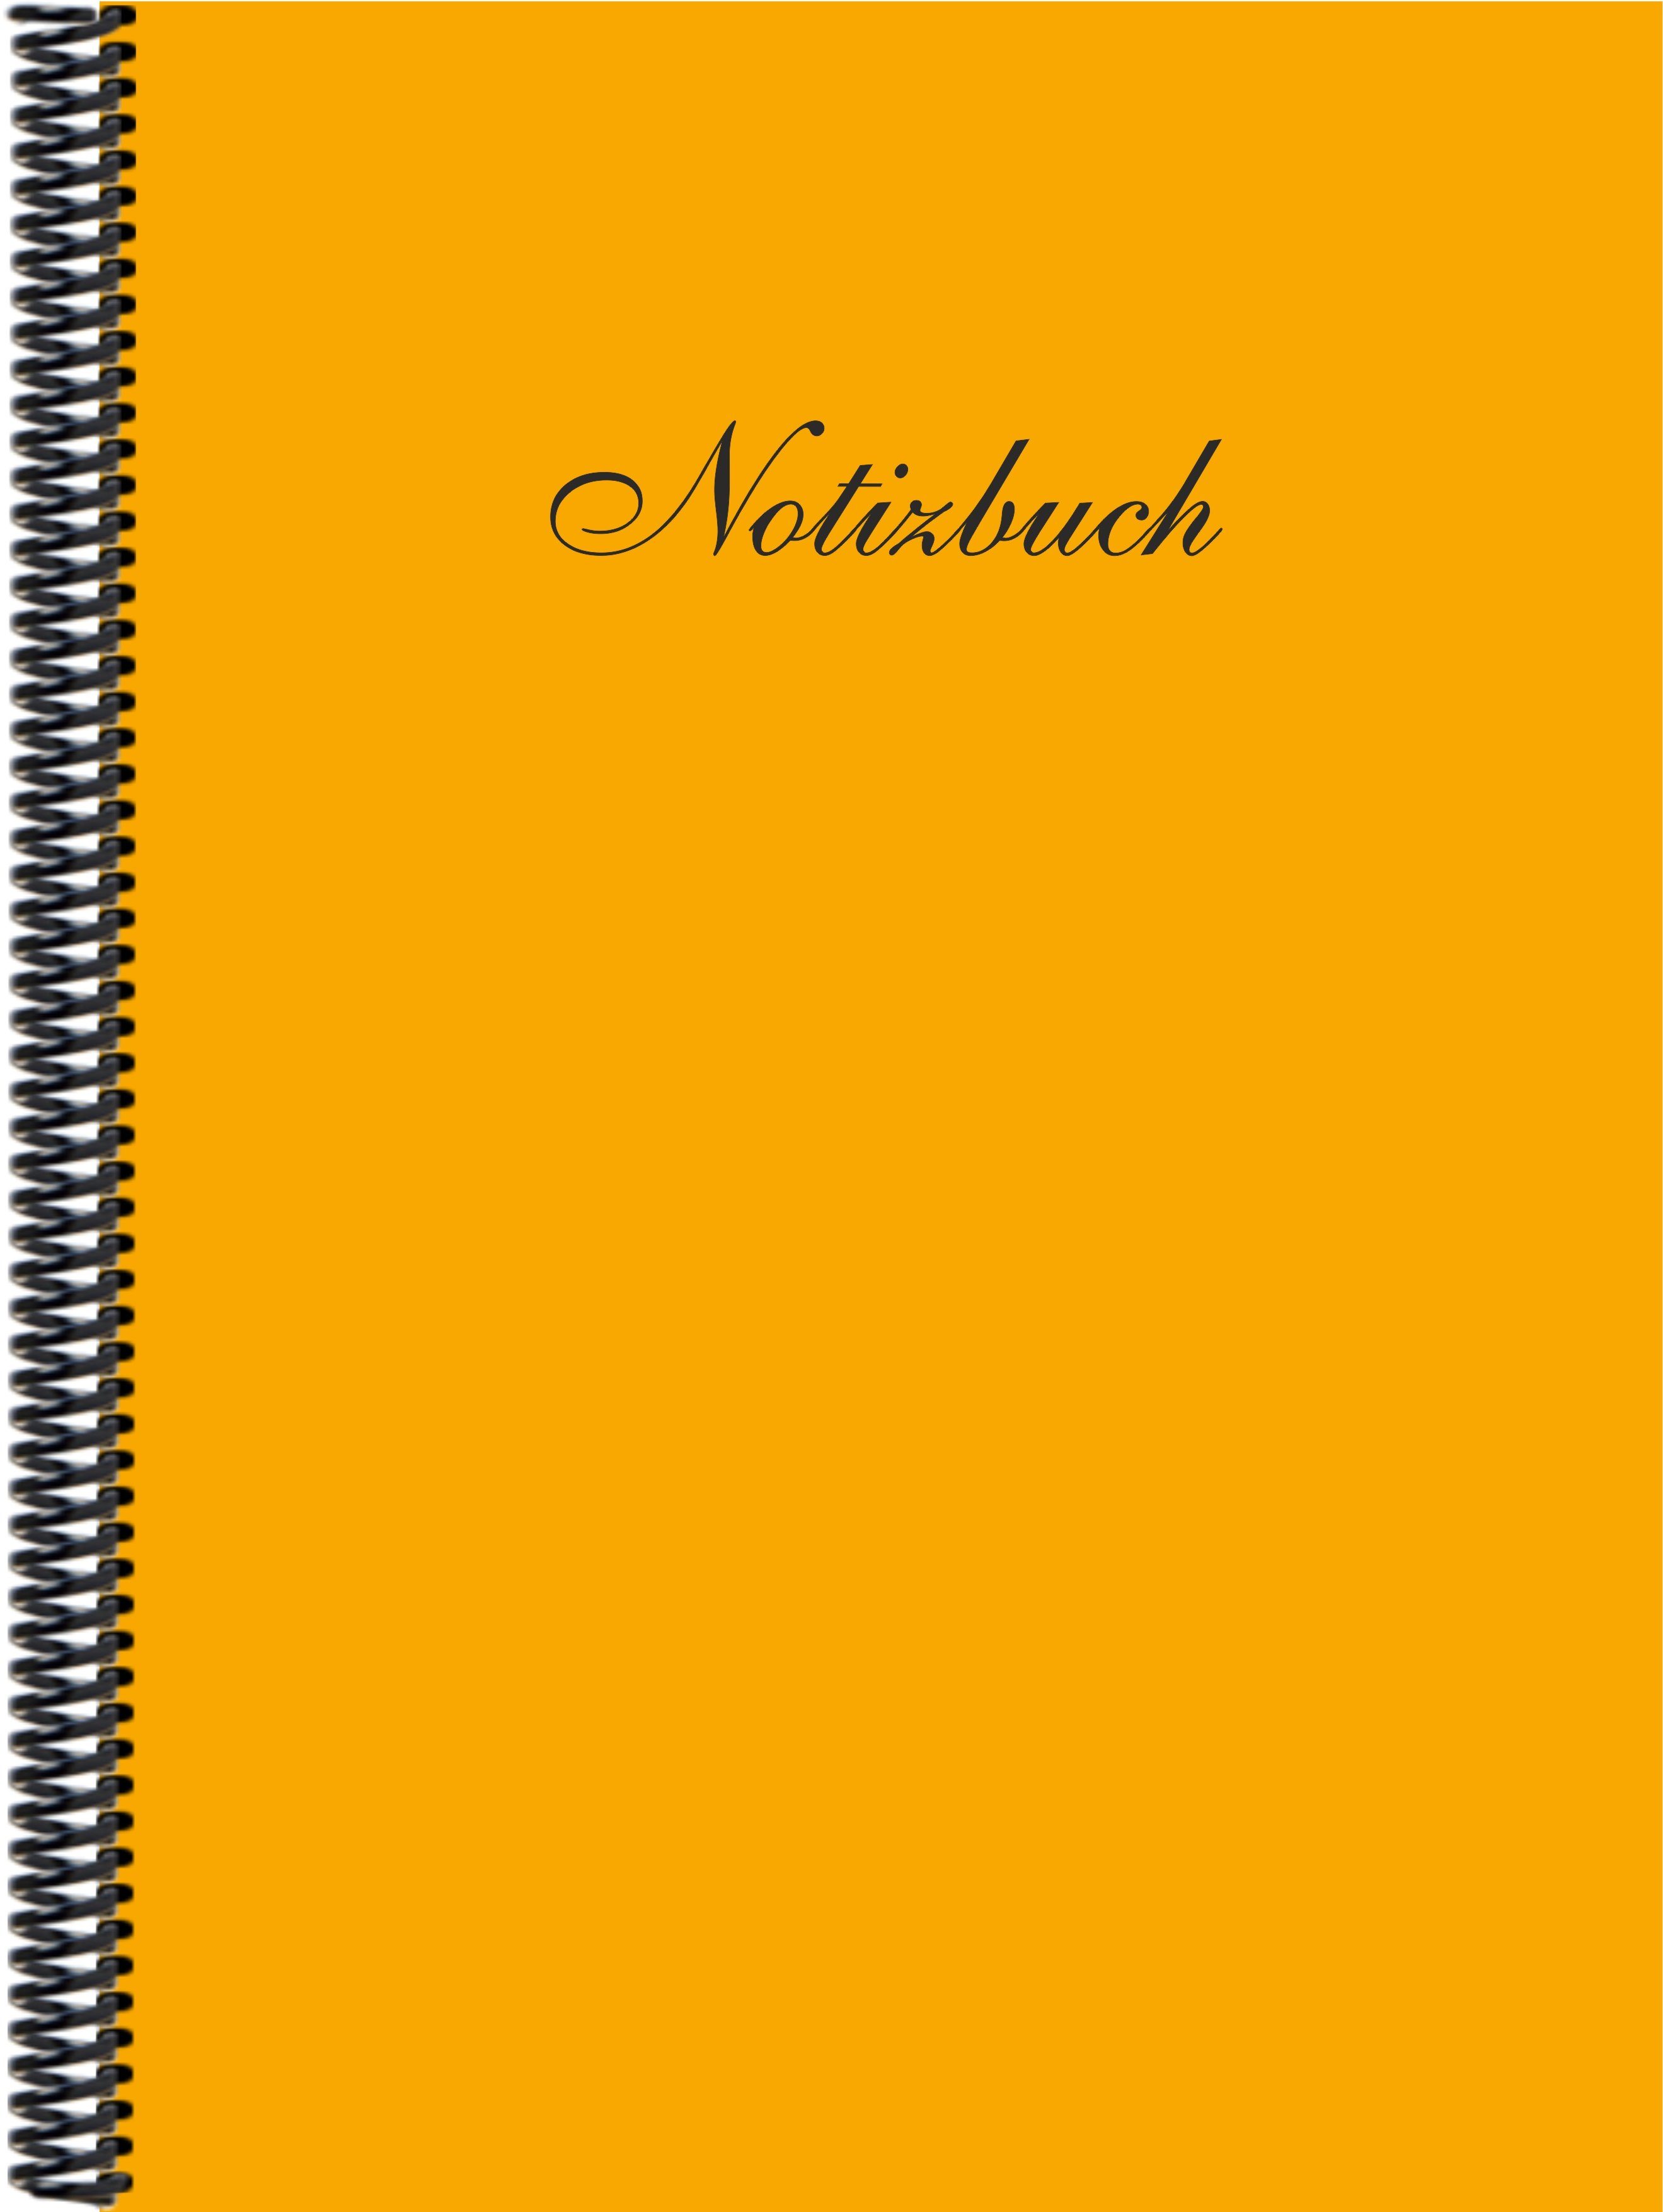 DINA4 in Trendfarbe E&Z Notizbuch Notizbuch liniert, dunkelgelb der Gmbh Verlag